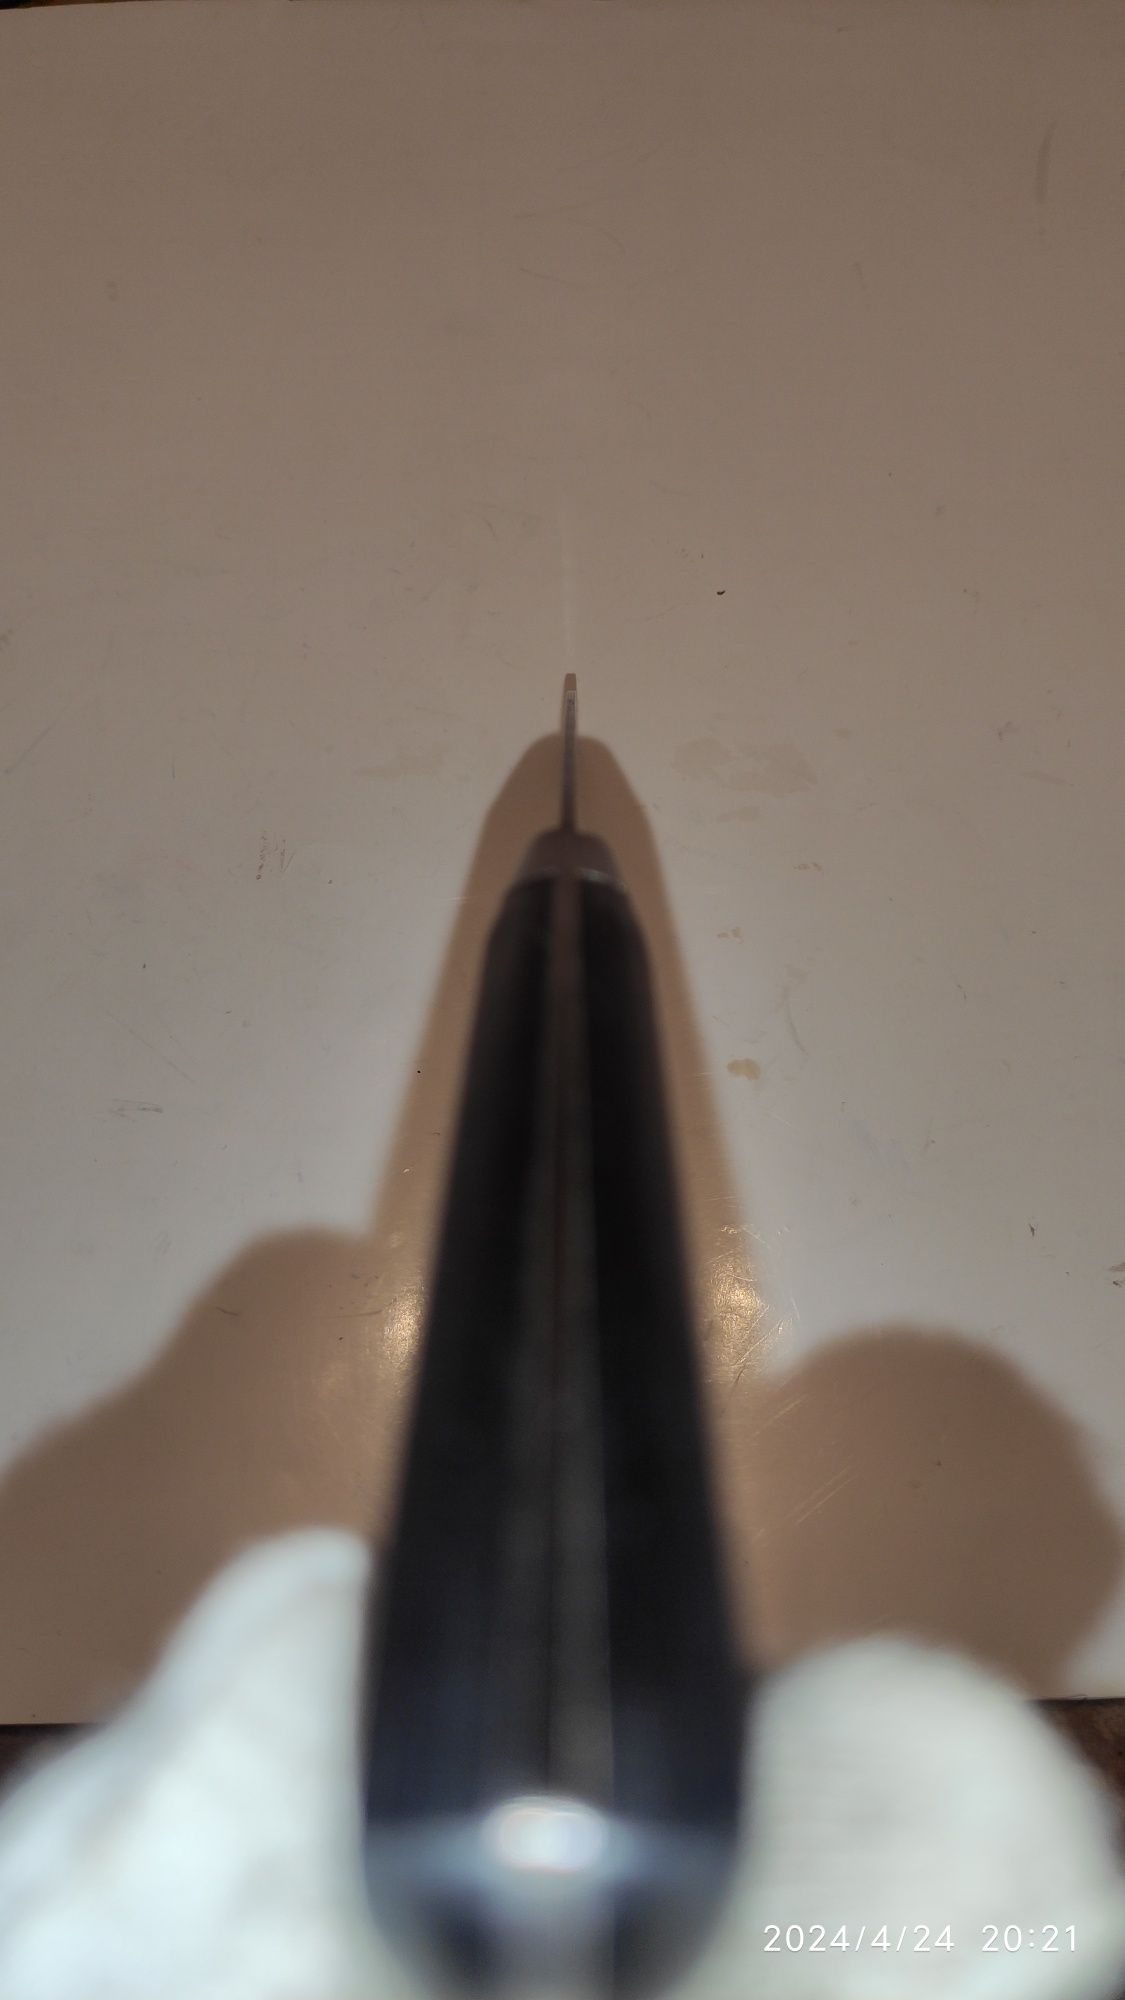 Japoński nóż typu Gyuto 180 mm z rdzeniem